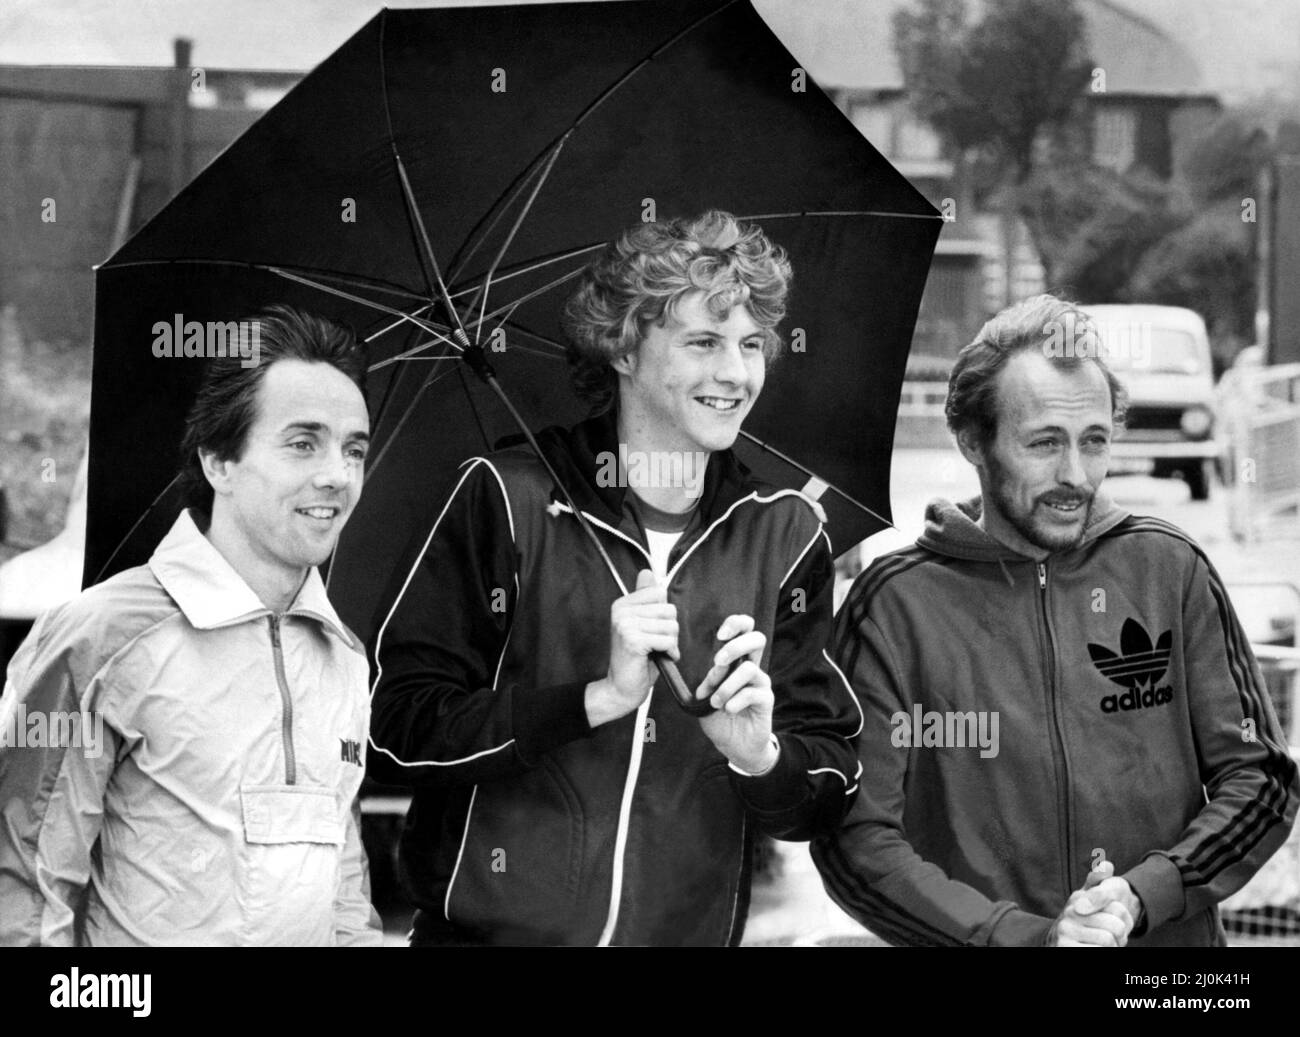 Der Athlet Steve Cram die Athleten Barry Smith, Steve Cram und Mike McLeod halten sich in Gateshead vor dem Regen zurück, um sich auf das kommende 3.000-Meter-Rennen am Sonntag vorzubereiten - Bild vom 23. Juli 1981 Stockfoto